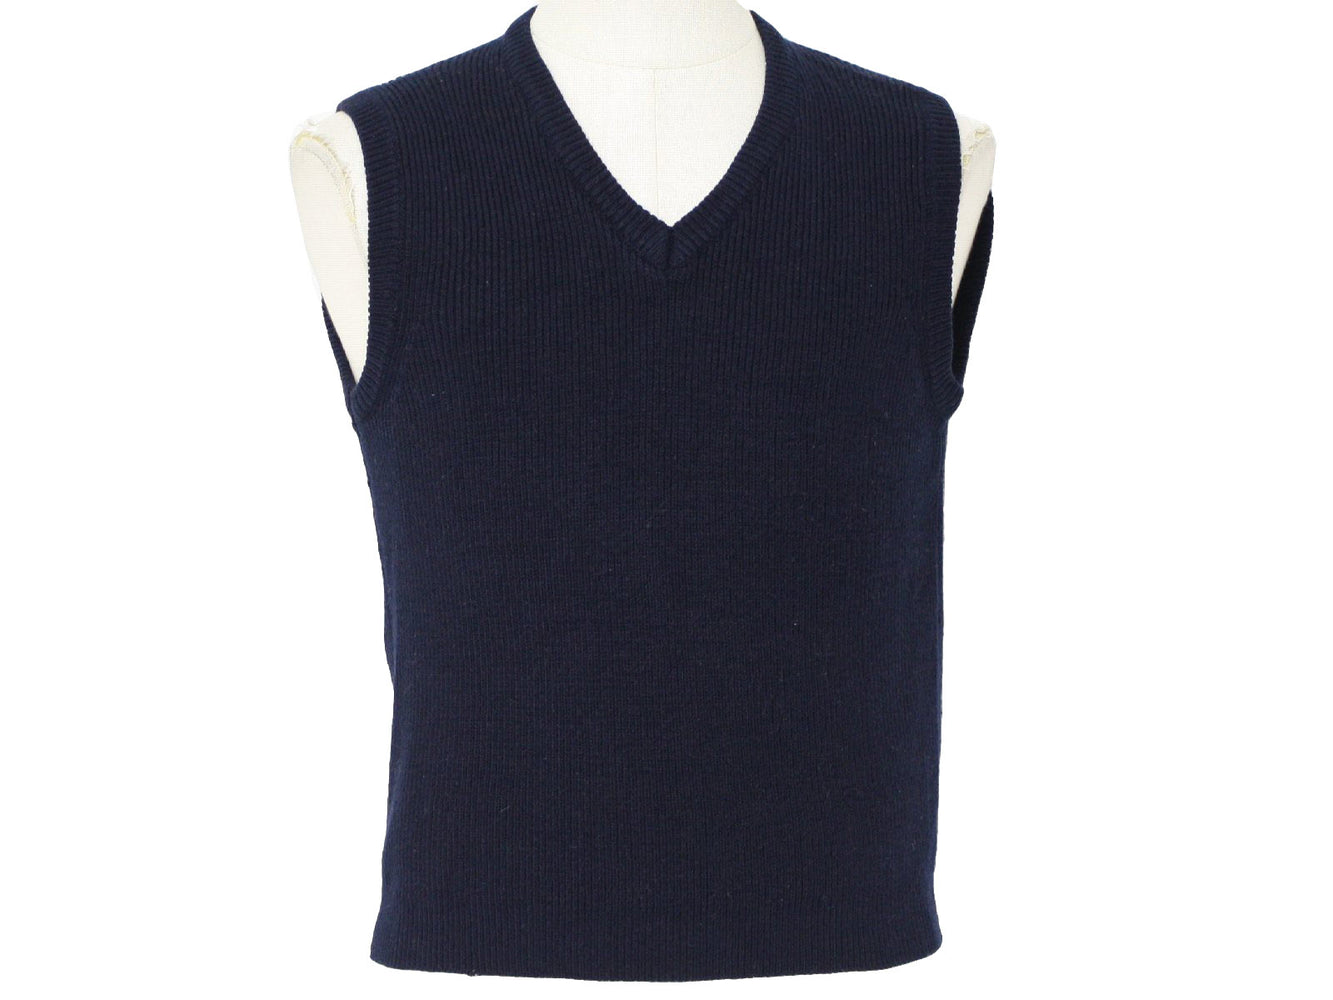 Sweater Vest V-Neck, Black, Size 4-20